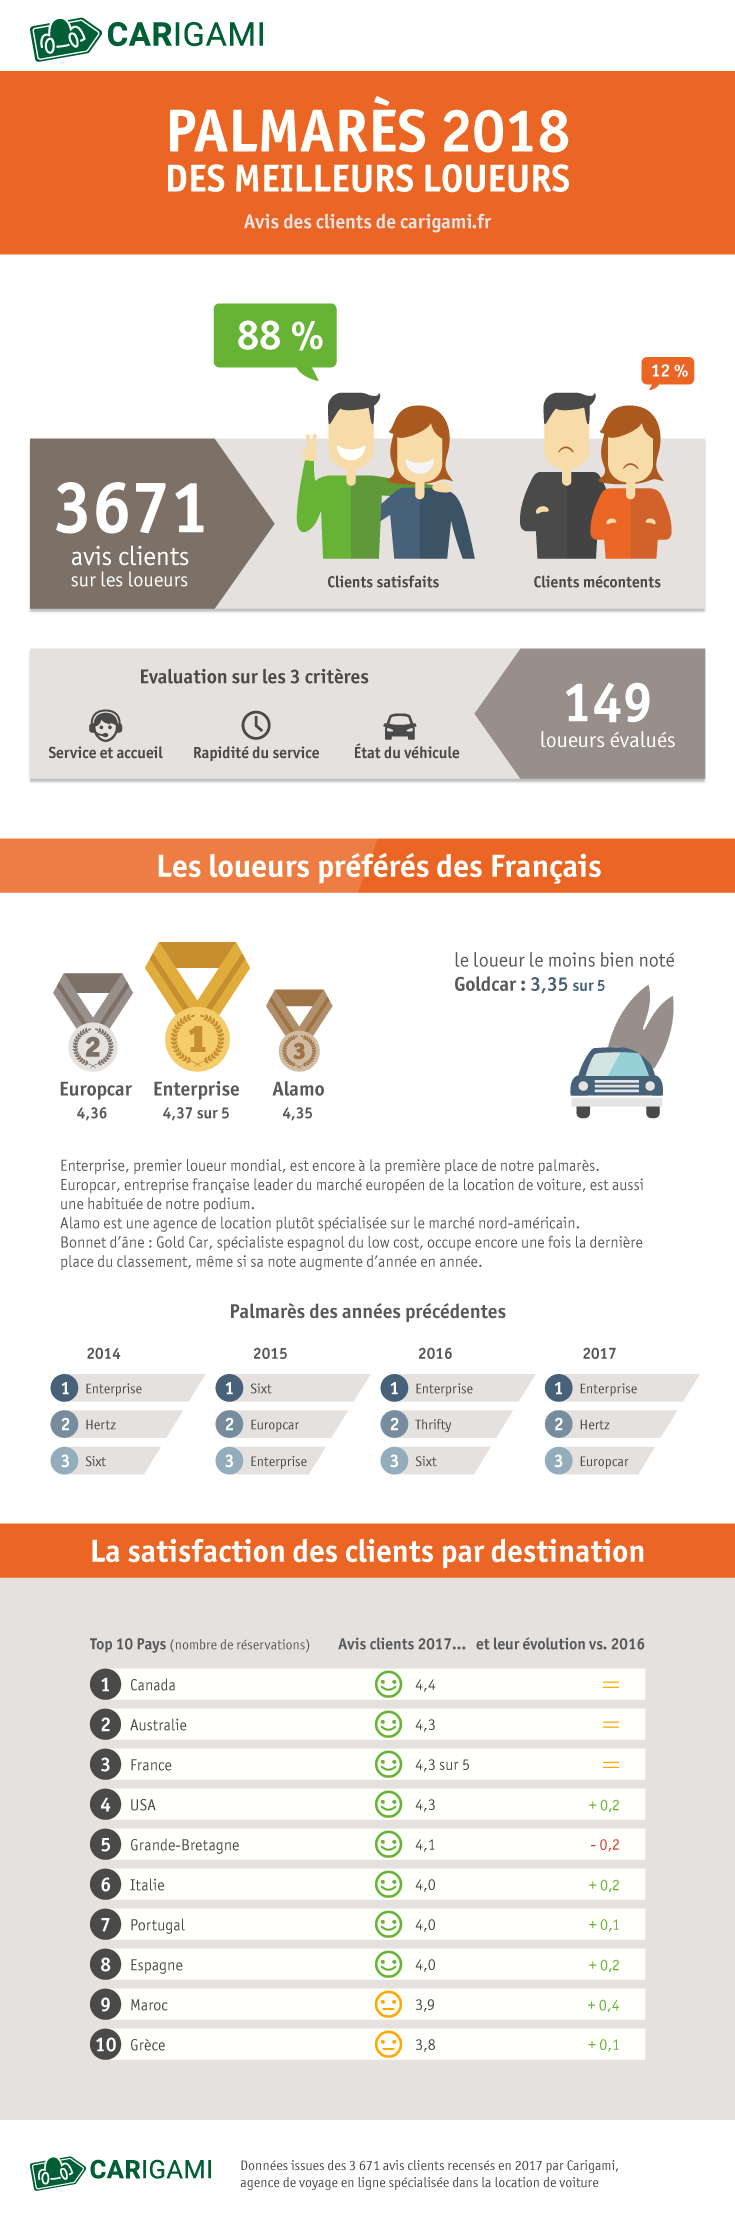 Quel est le loueur de voitures préféré des Français ?